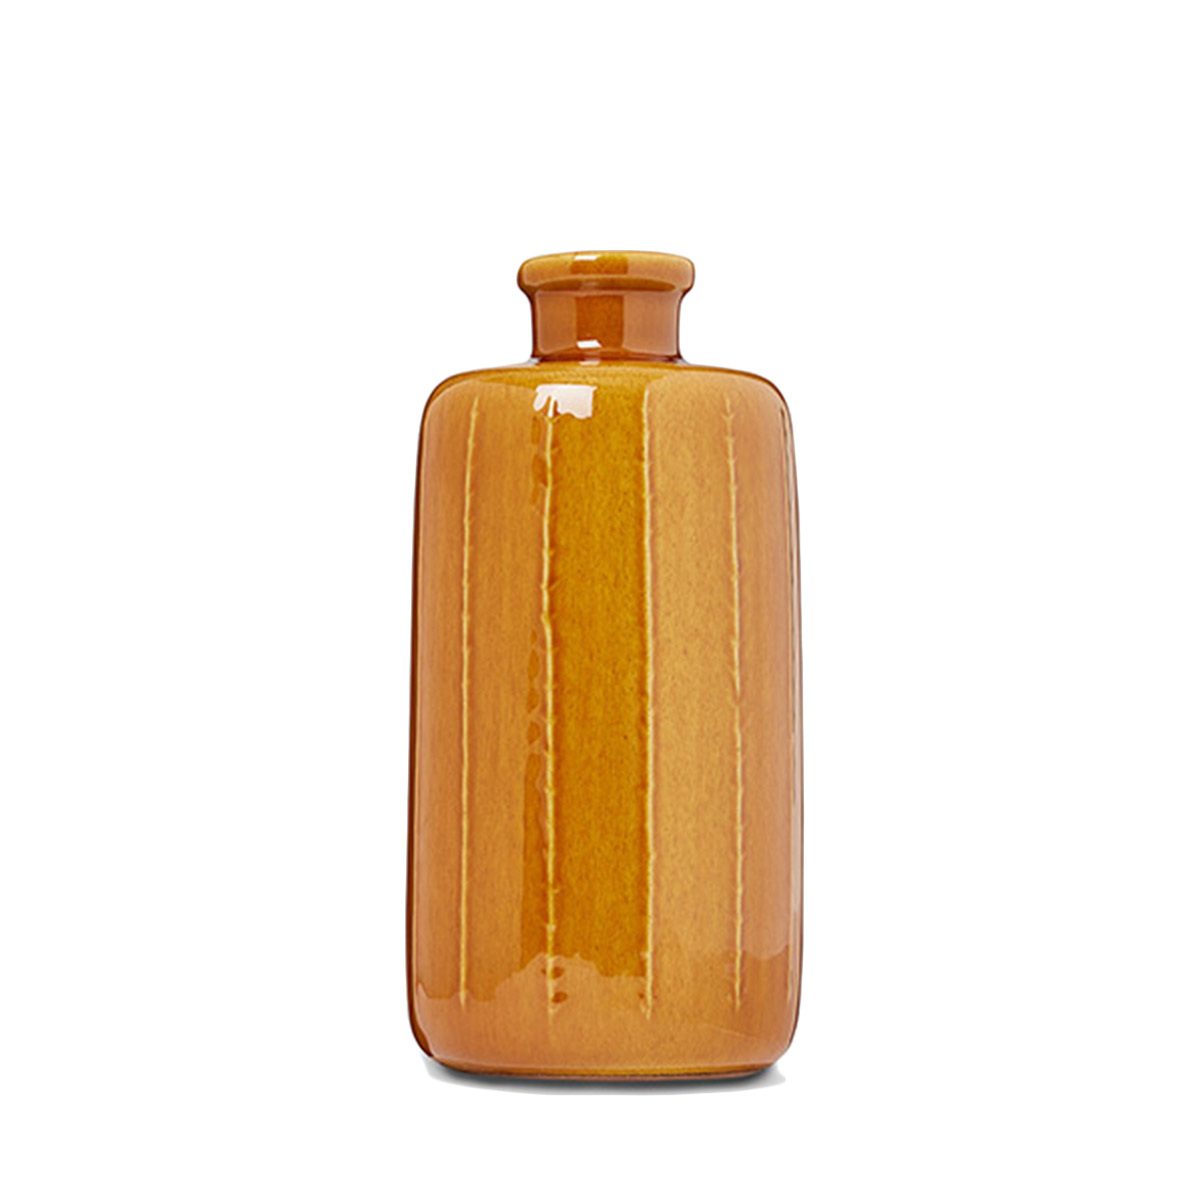 Vase Mini, Fauve - ø9 x H20 cm - Stoneware and enamel - image 1